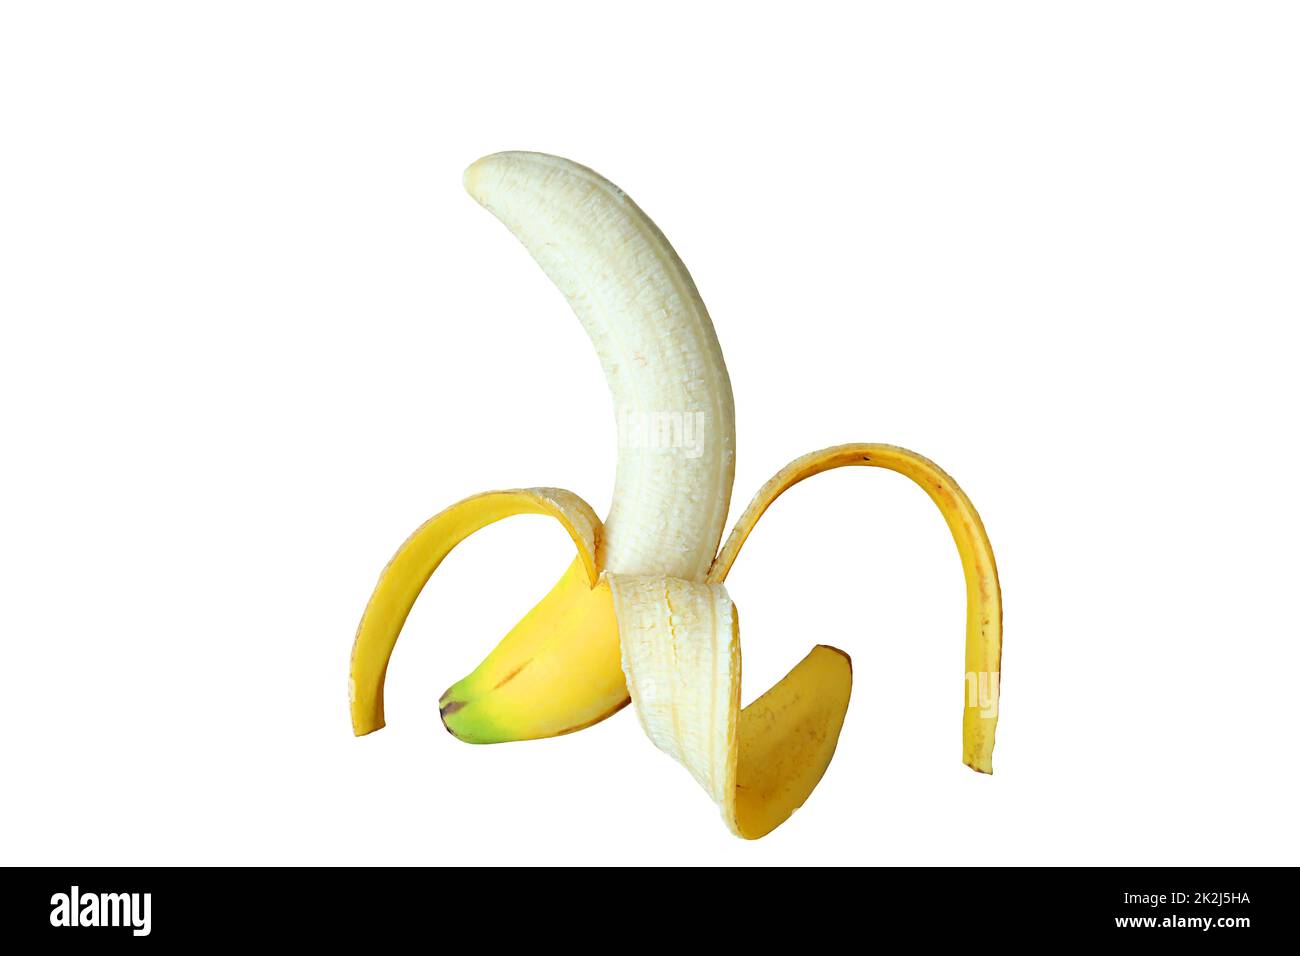 A finger of peeled fresh ripe banana isolated on white background Stock Photo